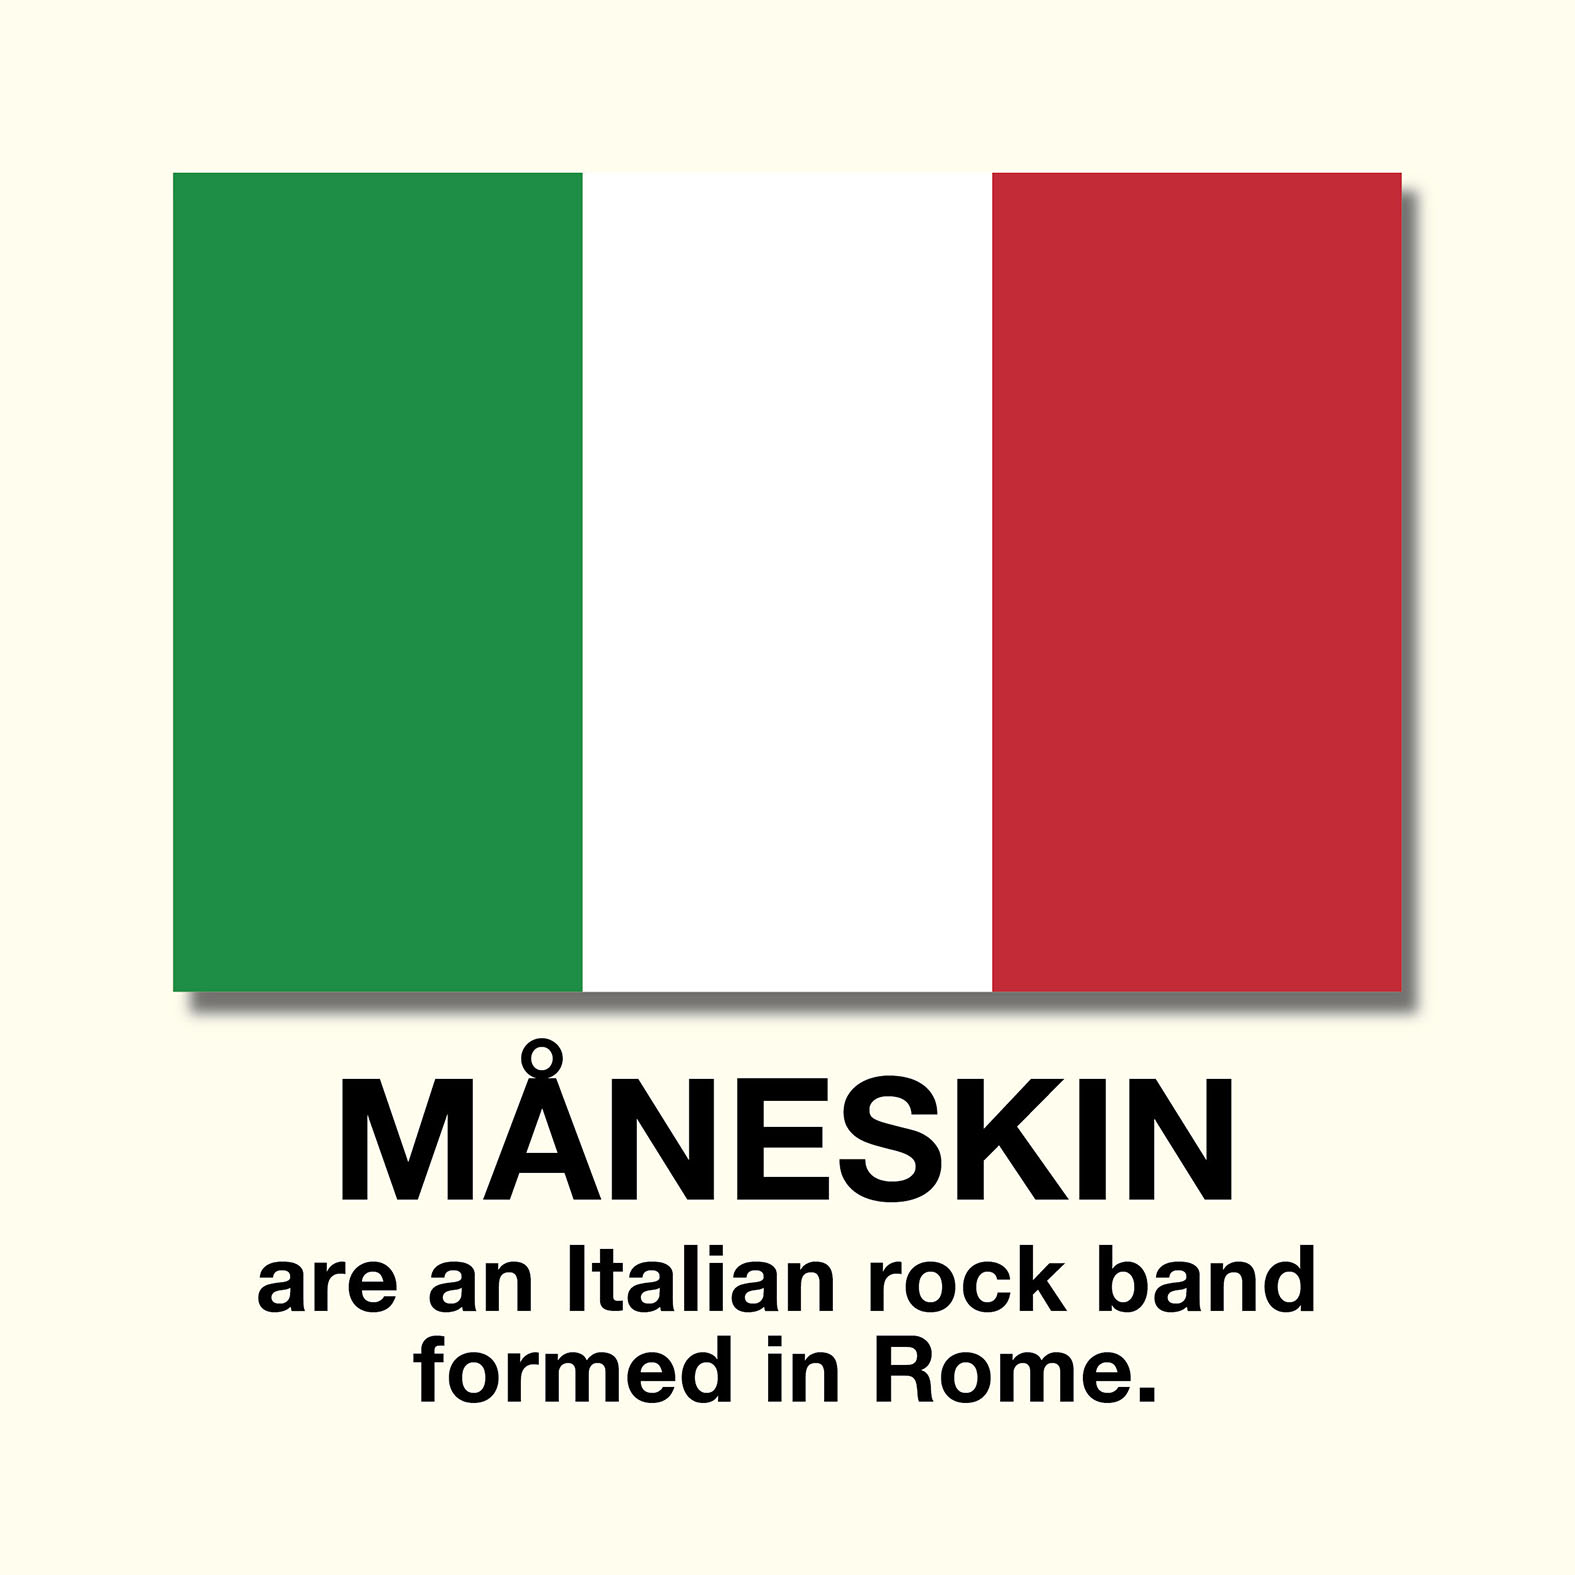 マネスキンはイタリア出身のバンド